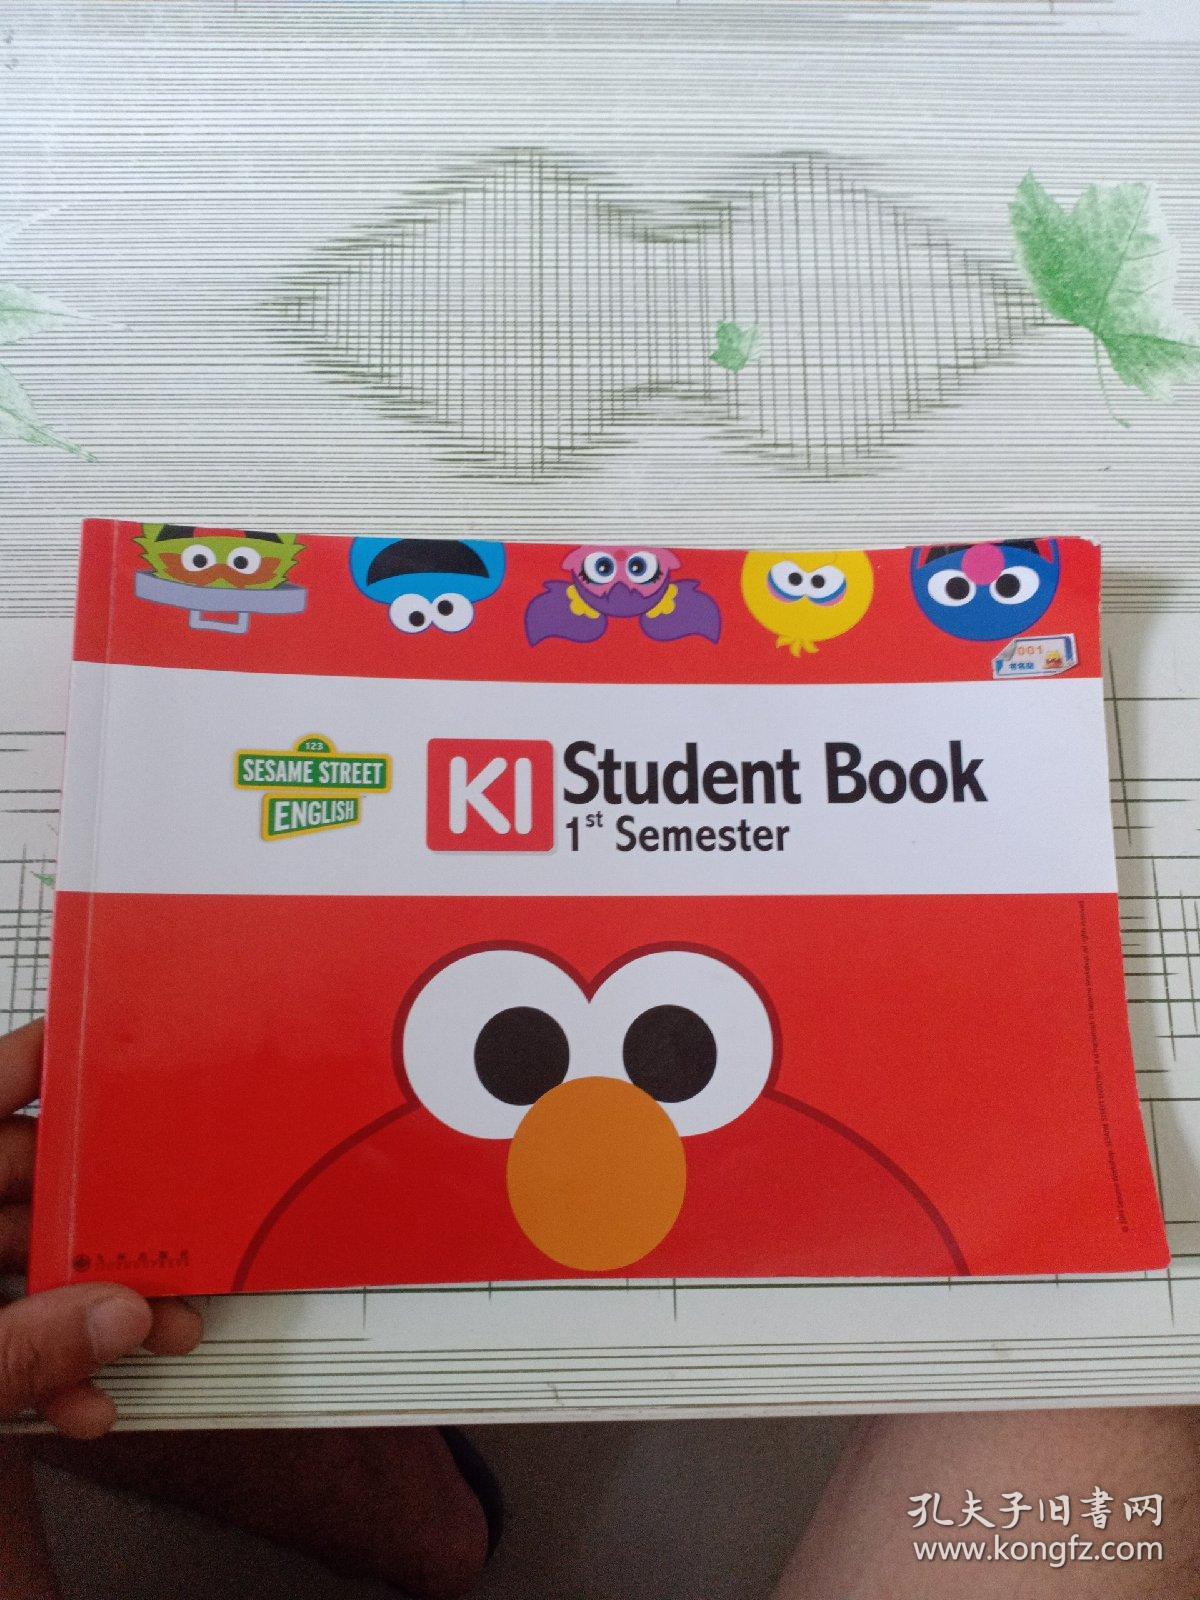 芝麻街英语——K1——Student book ——1st Semester（书边有点水印）